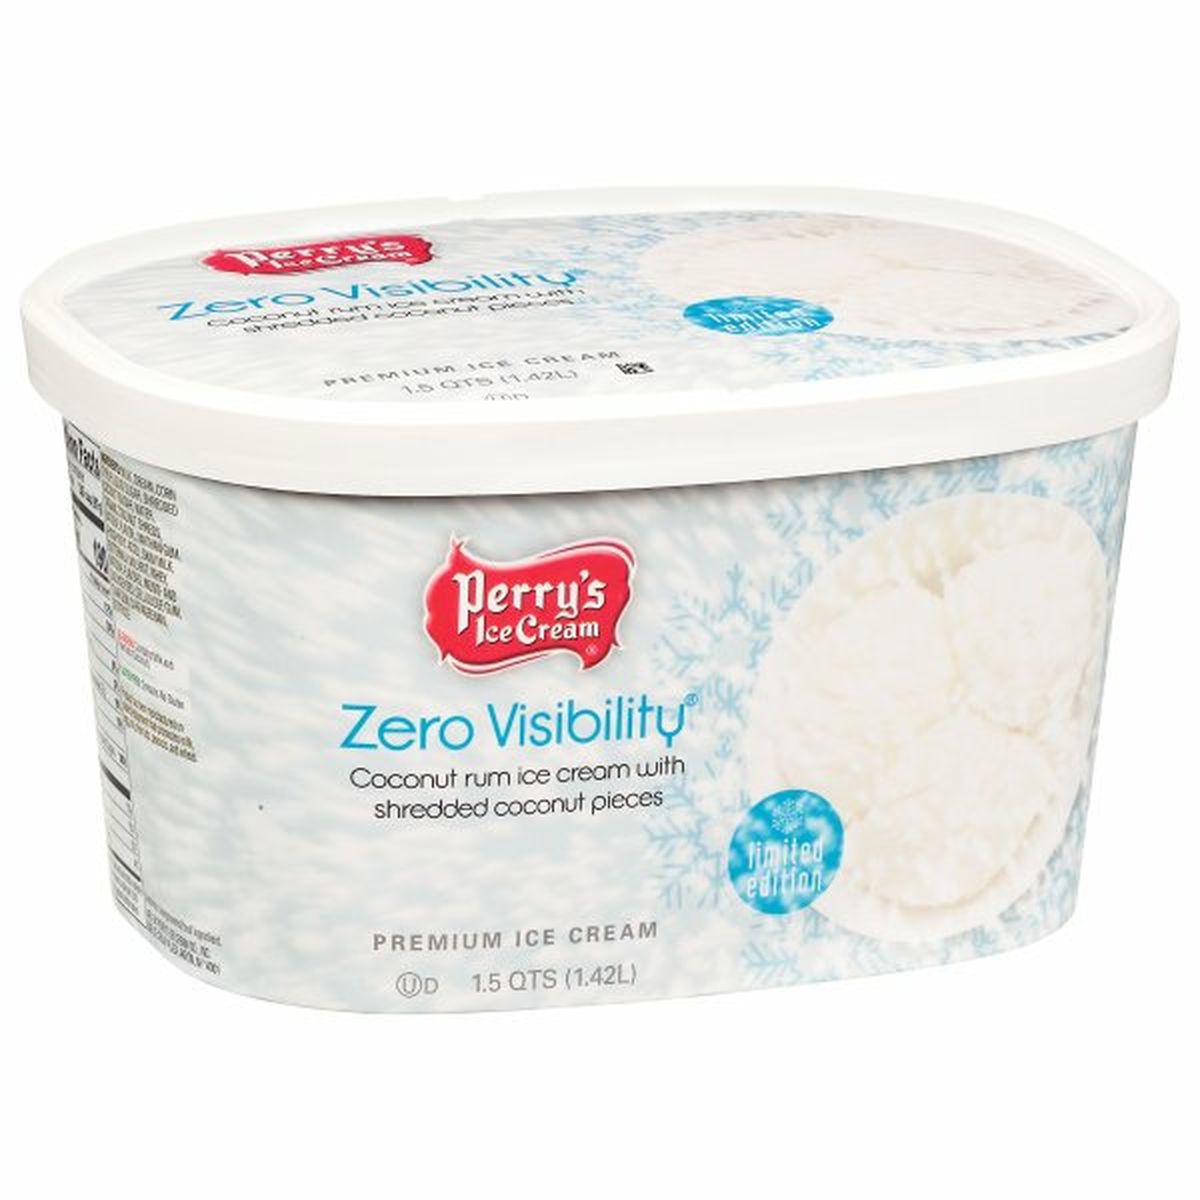 Calories in Perry's Ice Cream Ice Cream, Premium, Zero Visibility